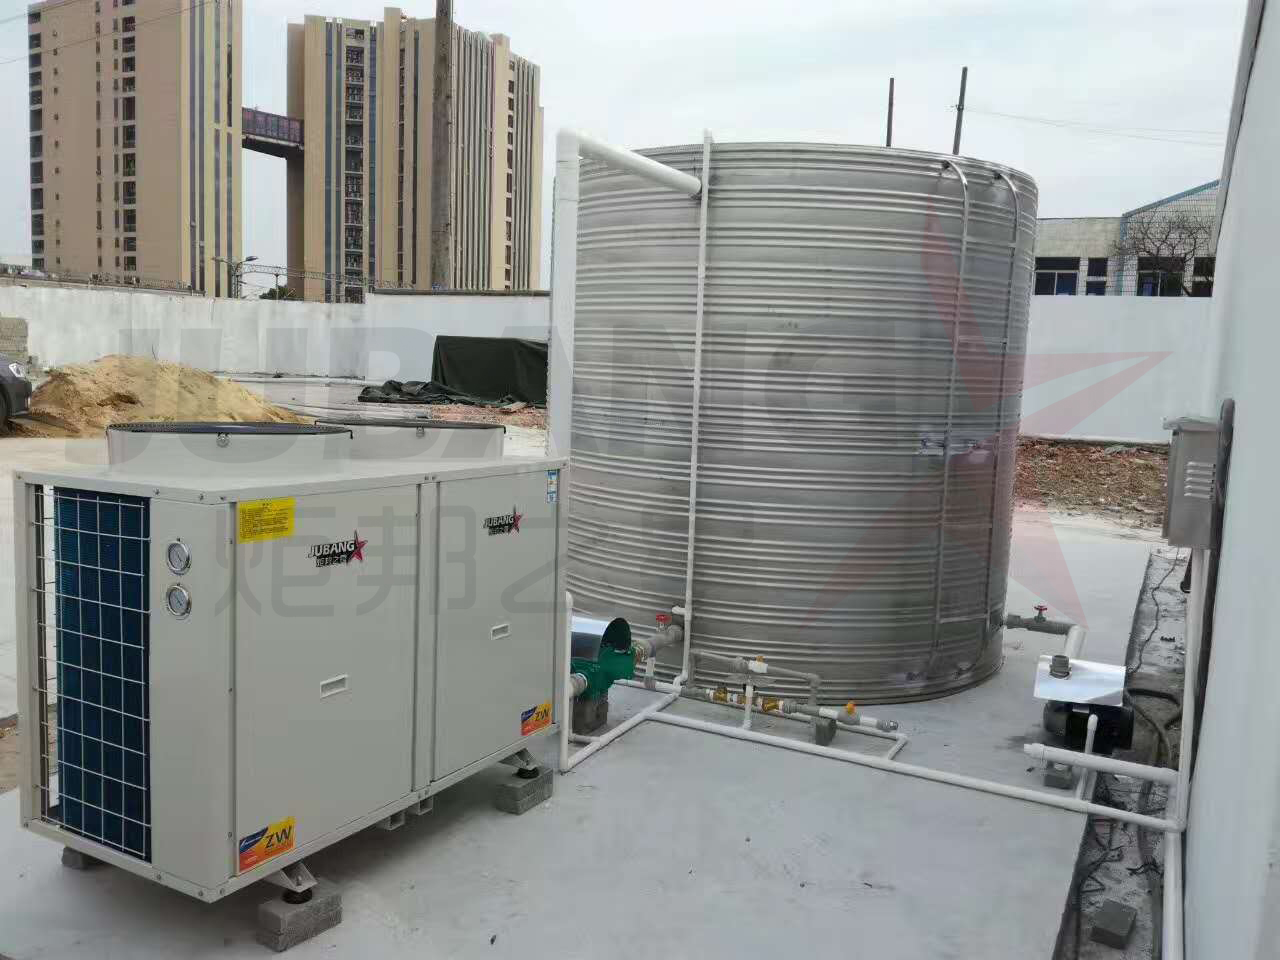 建筑工地用水选空气能热水器还是太阳能热水器?